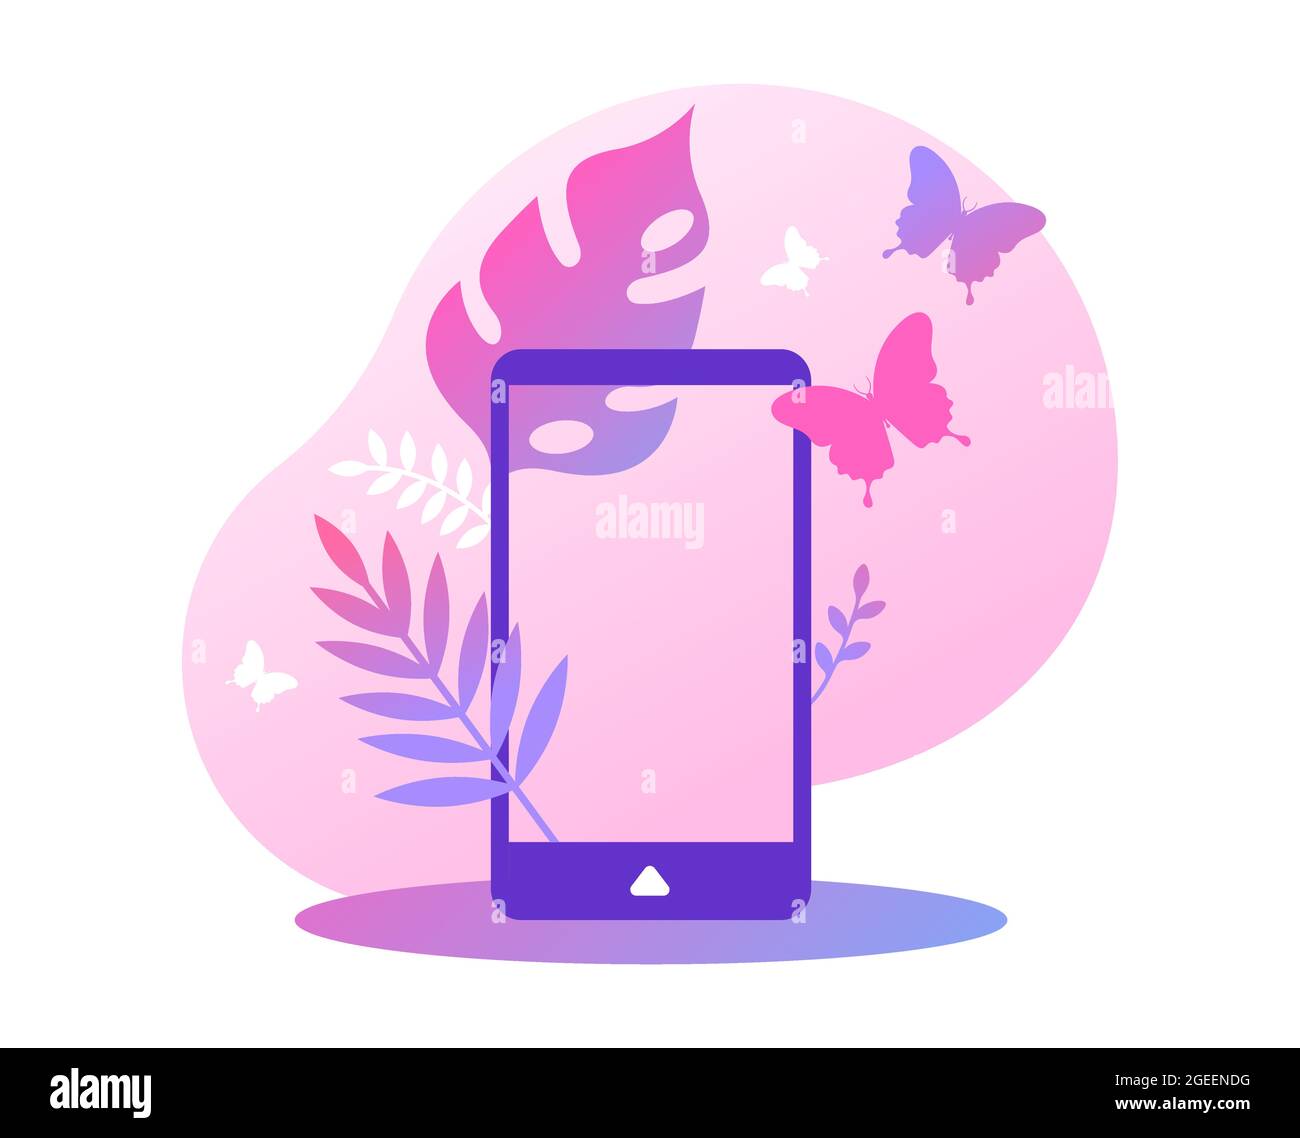 Leerer Smartphone-Bildschirm mit femeninen tropischen Pflanzenblättern und Schmetterlingen. Moderne Technologie Produktpräsentation Vorlage oder Frau Kommunikation Stock Vektor